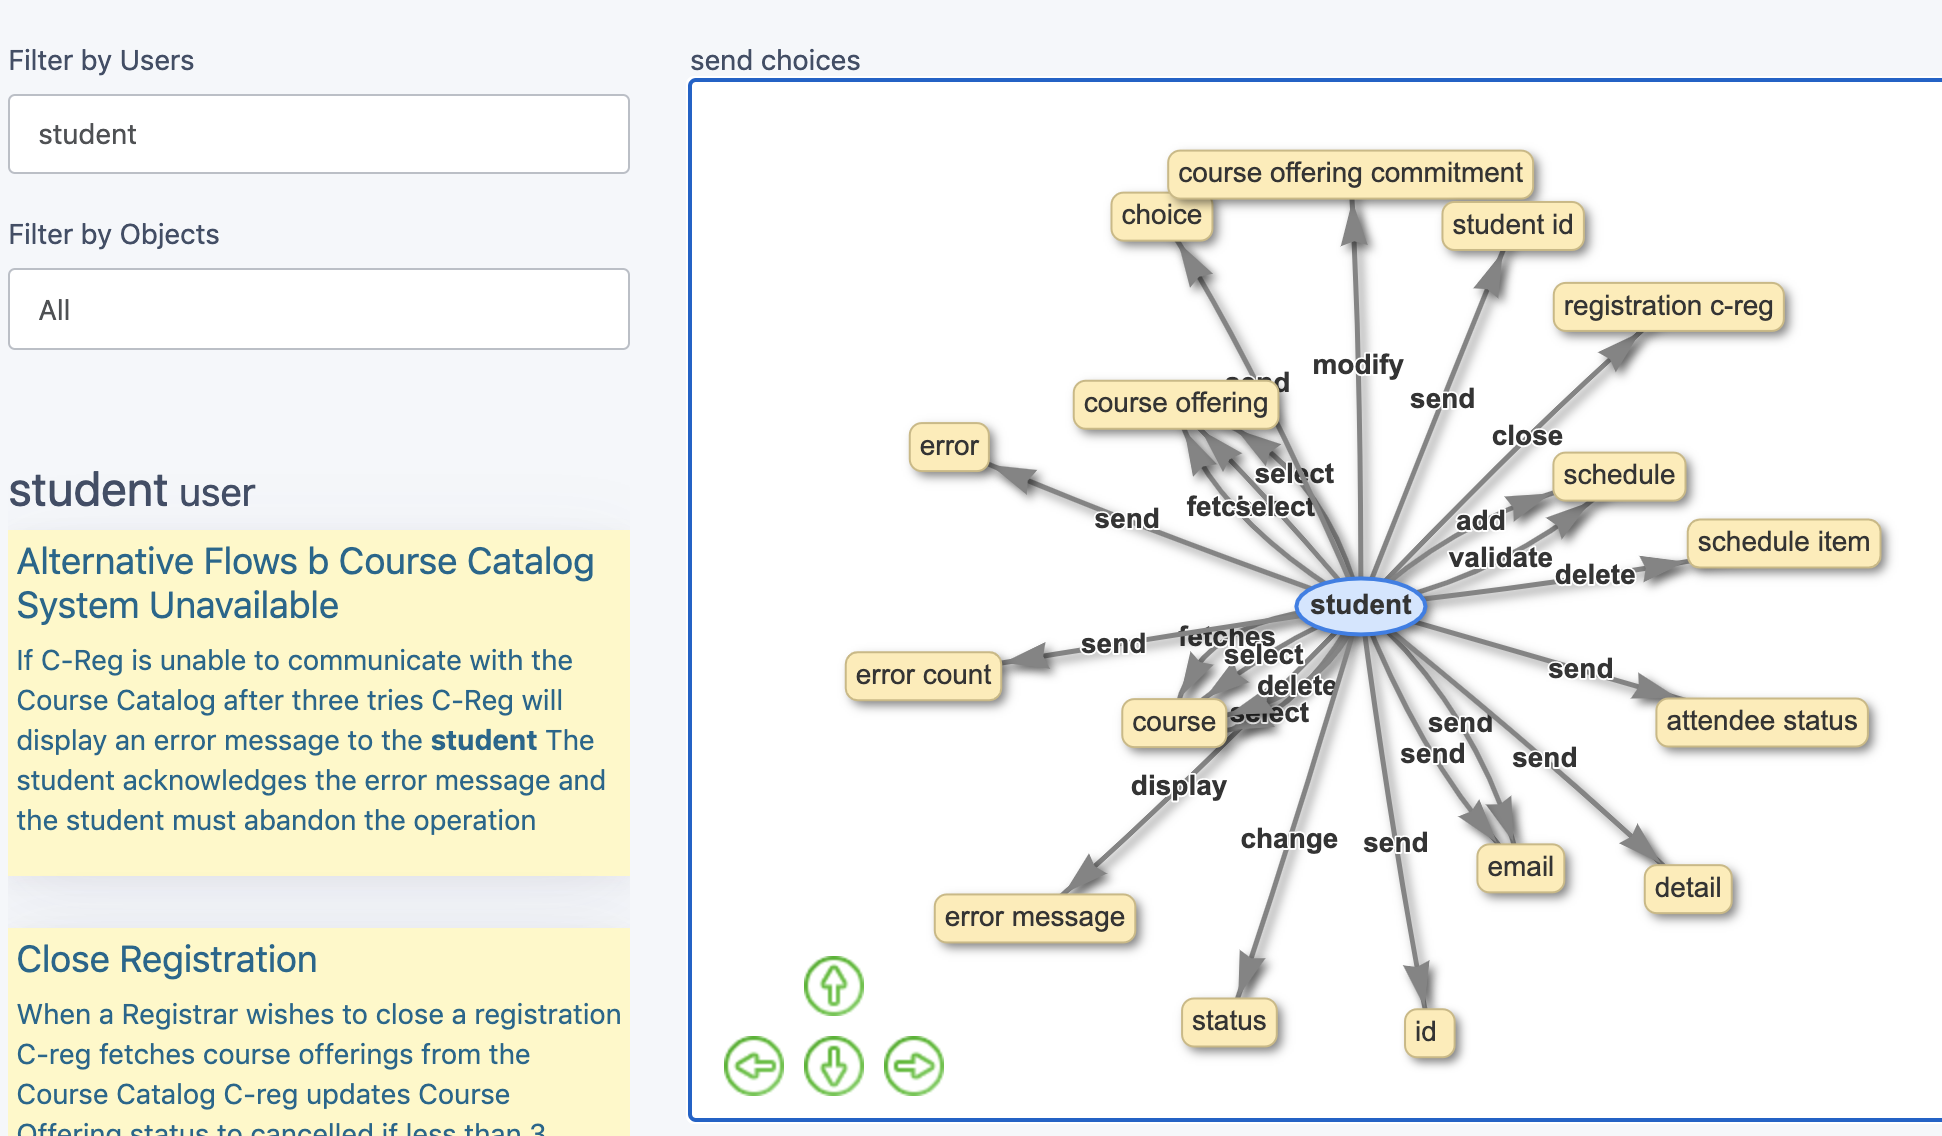 filtrer un sous-ensemble de user stories pour un cas d'utilisation, comme un diagramme de réseau